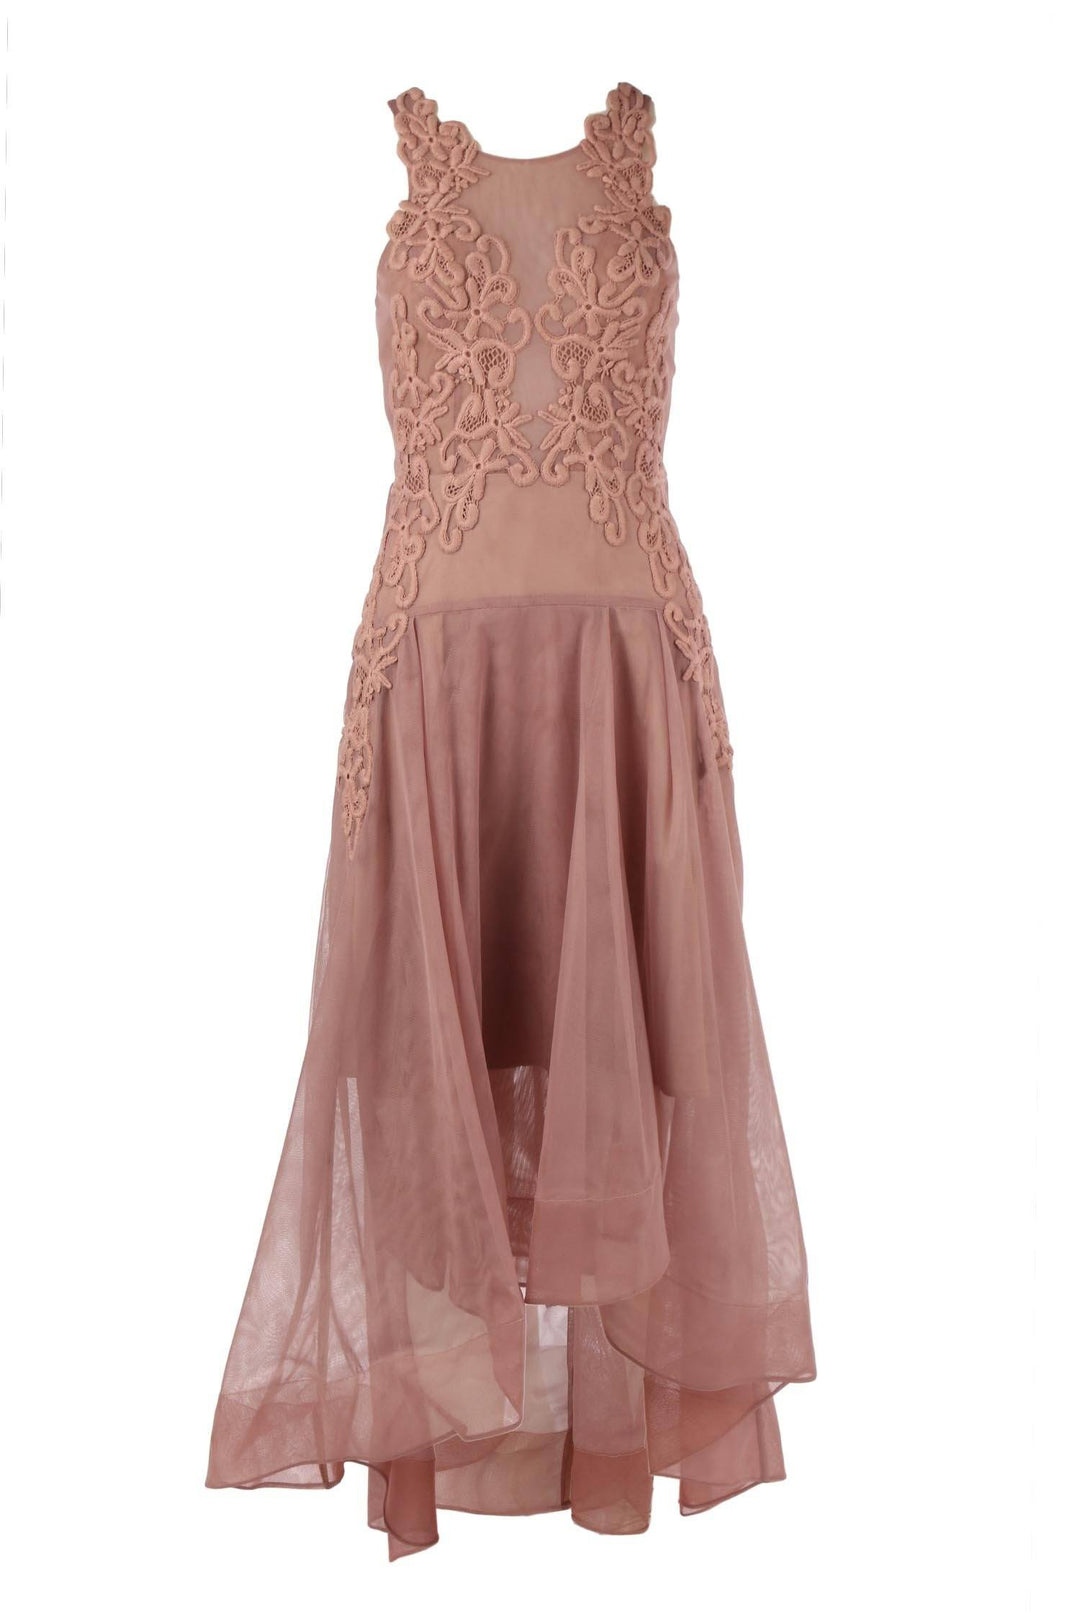 Paris Dress in Dusty Pink Dresses Eileen Kirby 